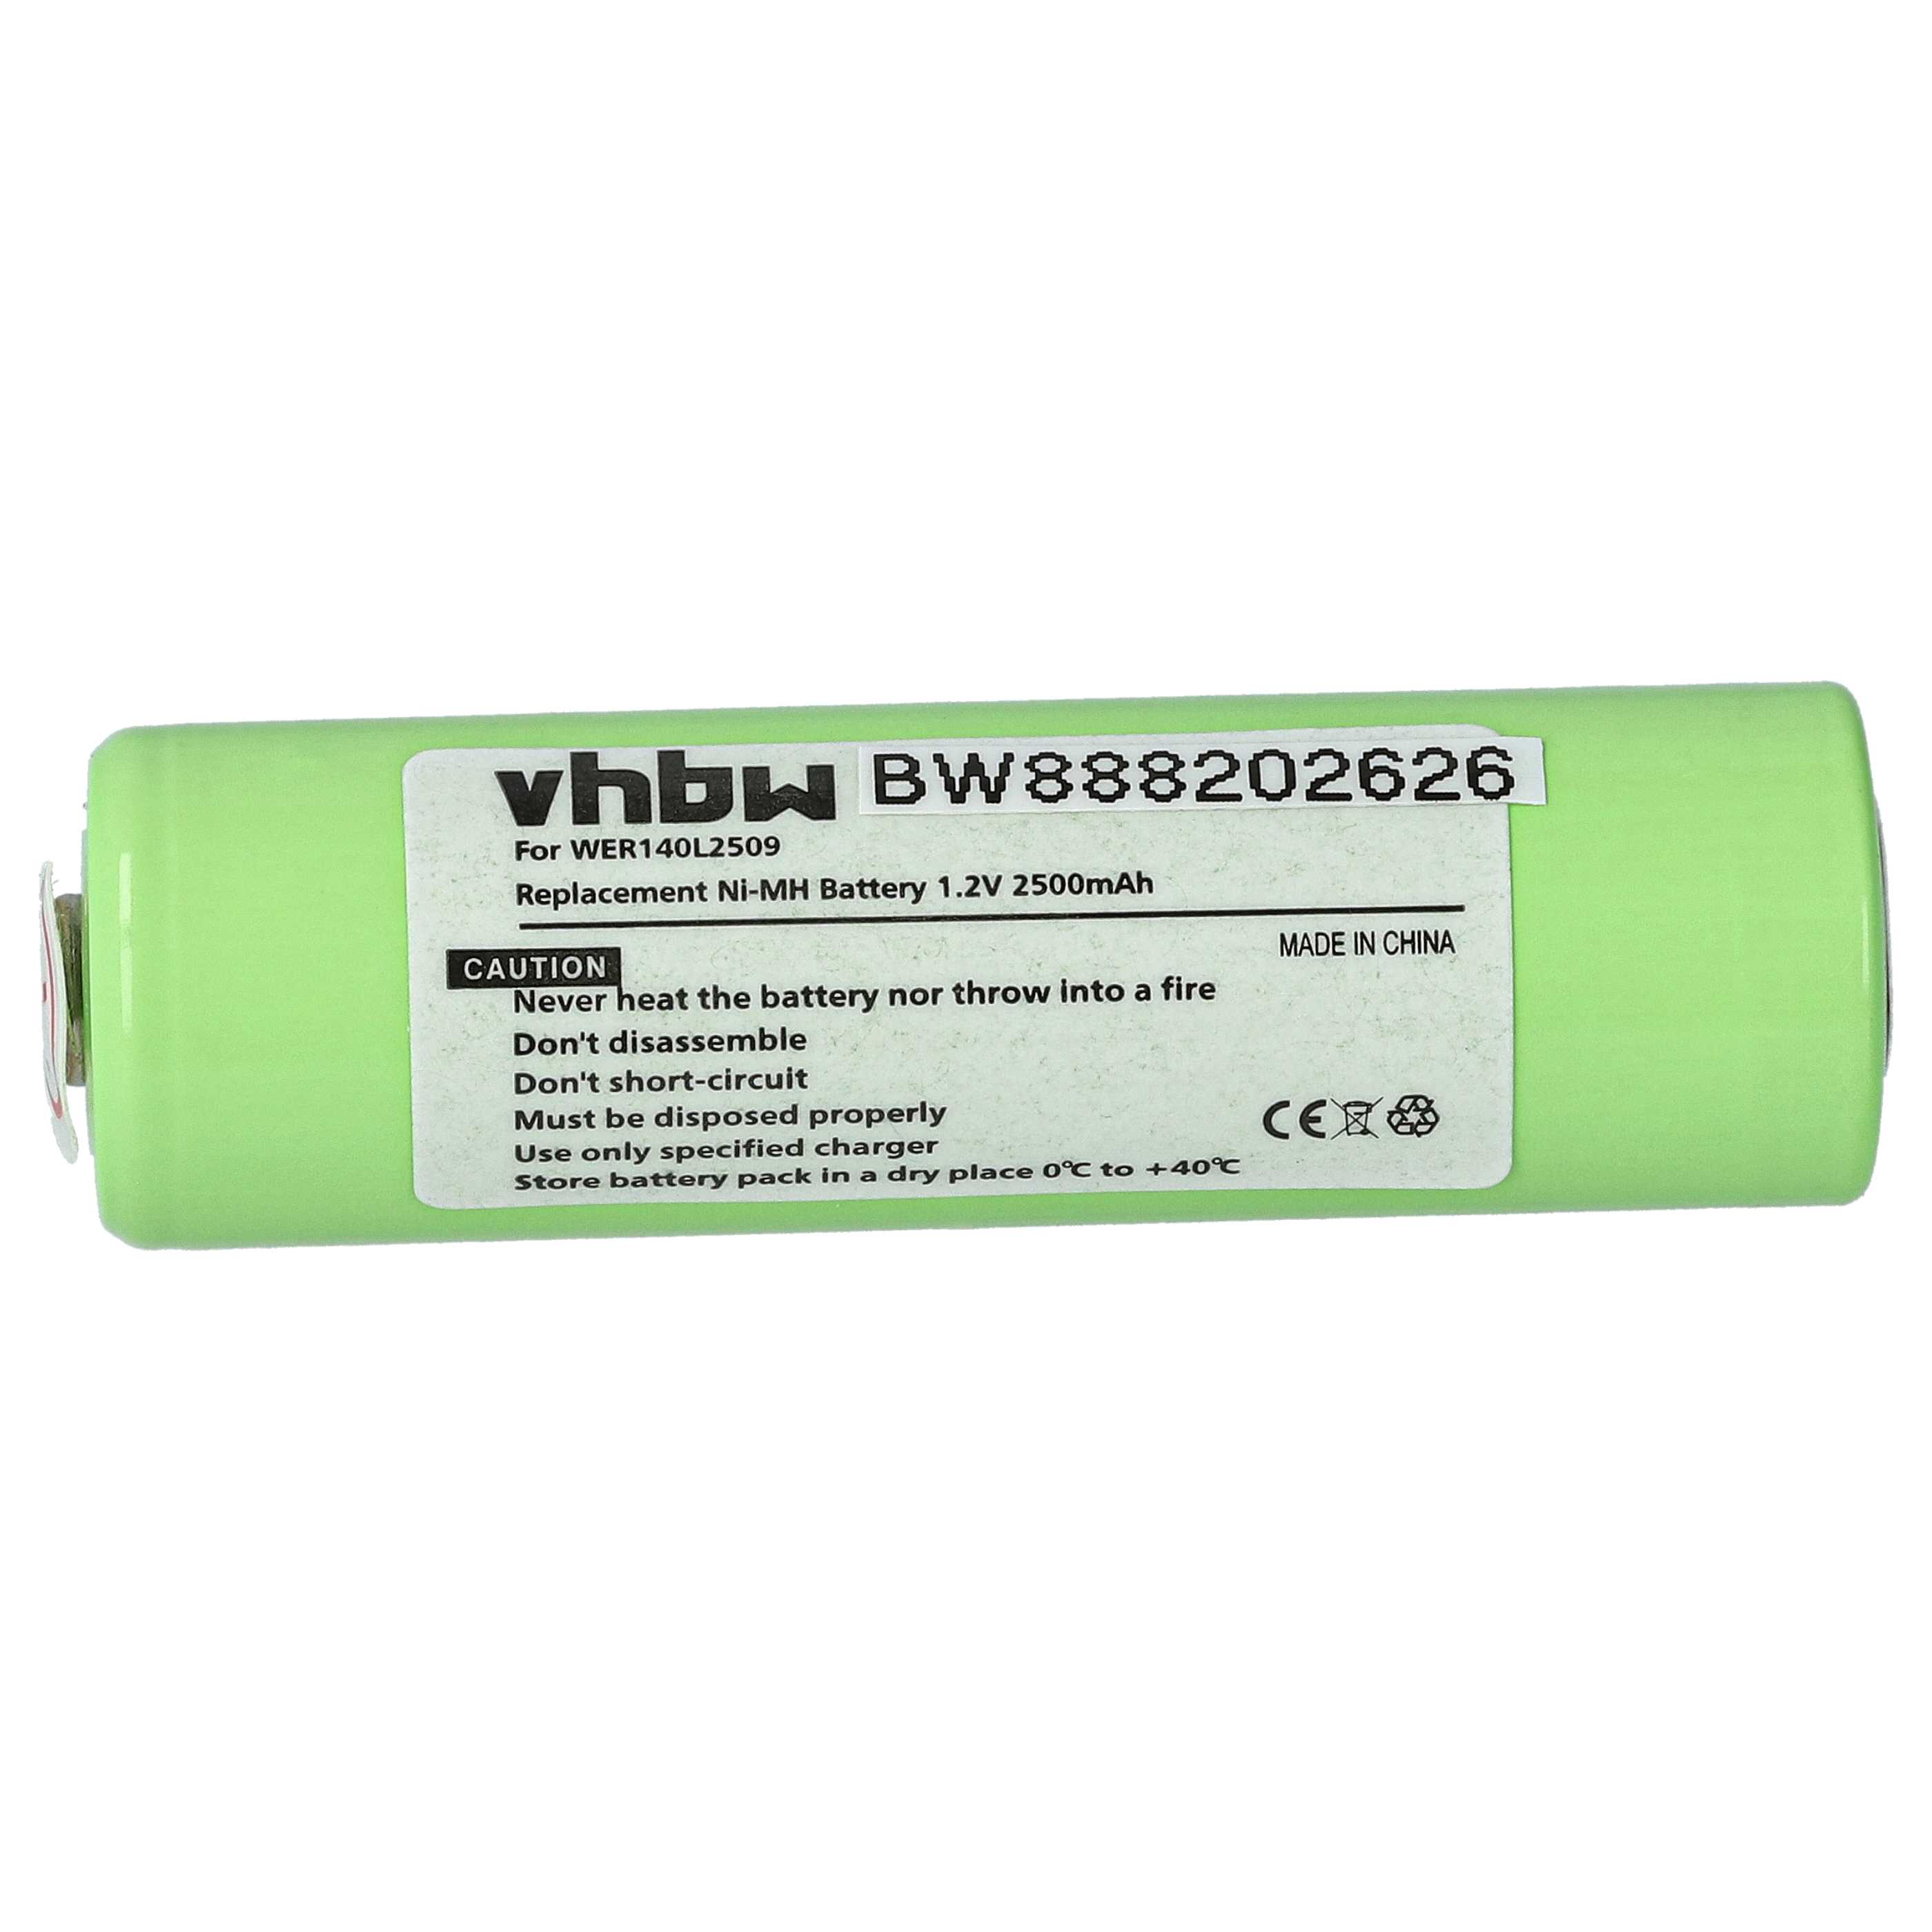 Batterie remplace Panasonic WER140L2509 pour tondeuse à cheveux - 2500mAh 1,2V NiMH